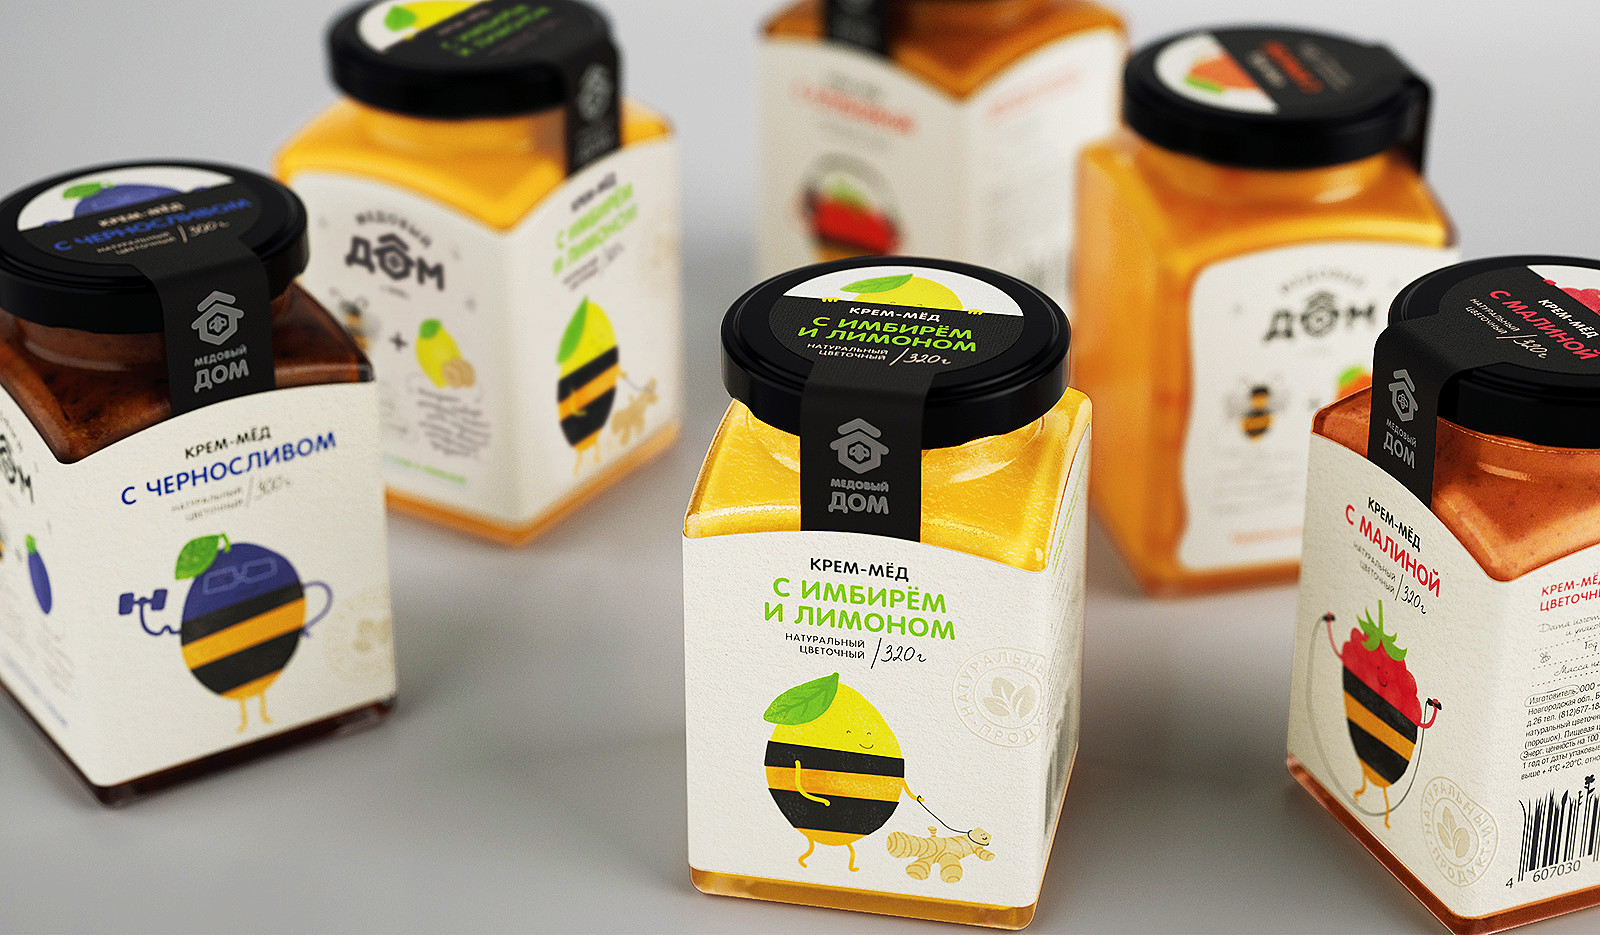 俄罗斯蜂蜜包装设计作品赏析